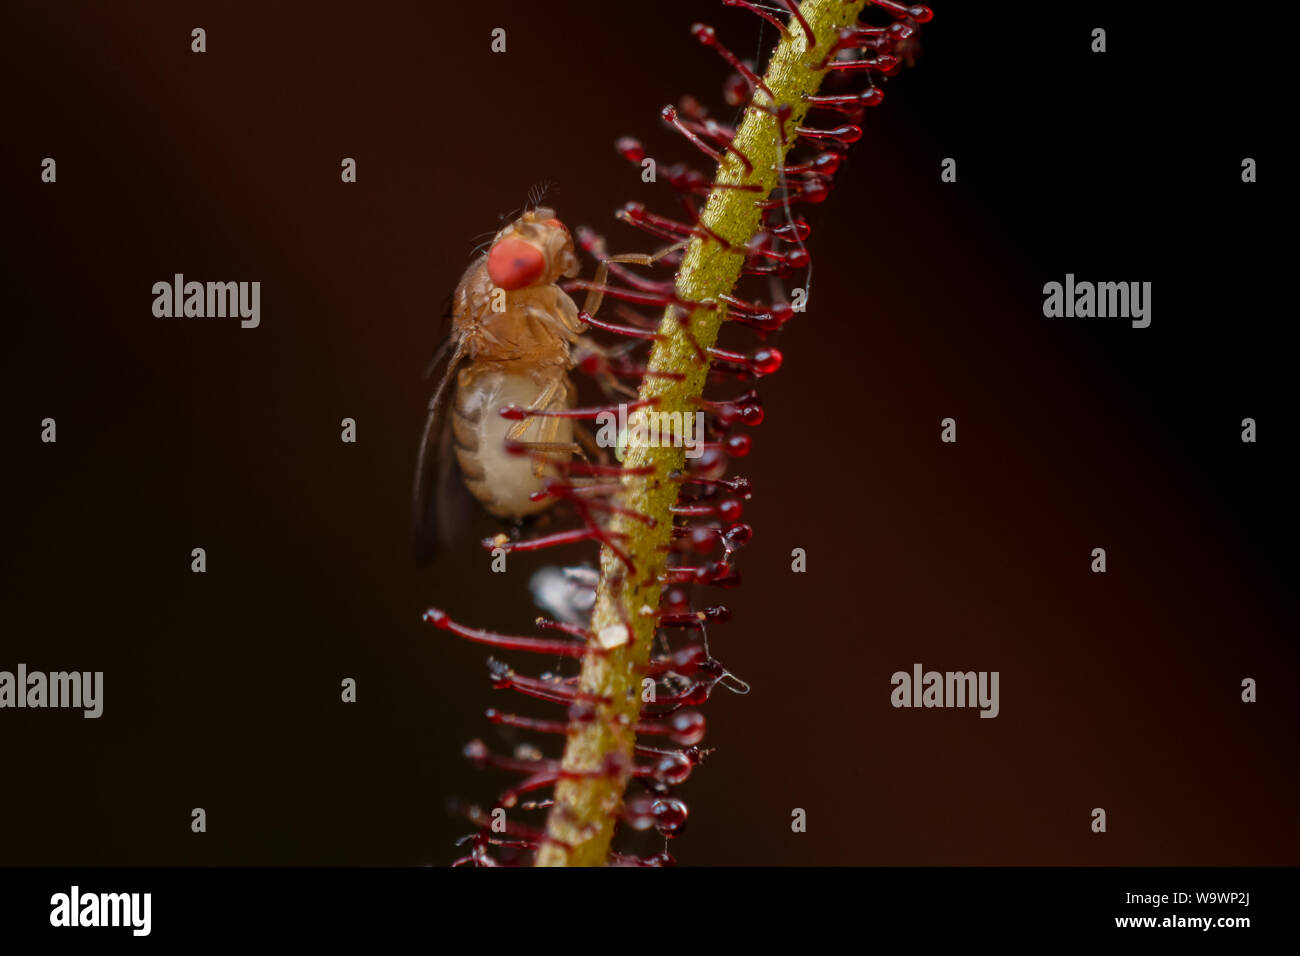 Mouche à fruits (drosophila) considéré comme une maison piégés sur un ravageur rossolis plantes carnivores, close-up Banque D'Images